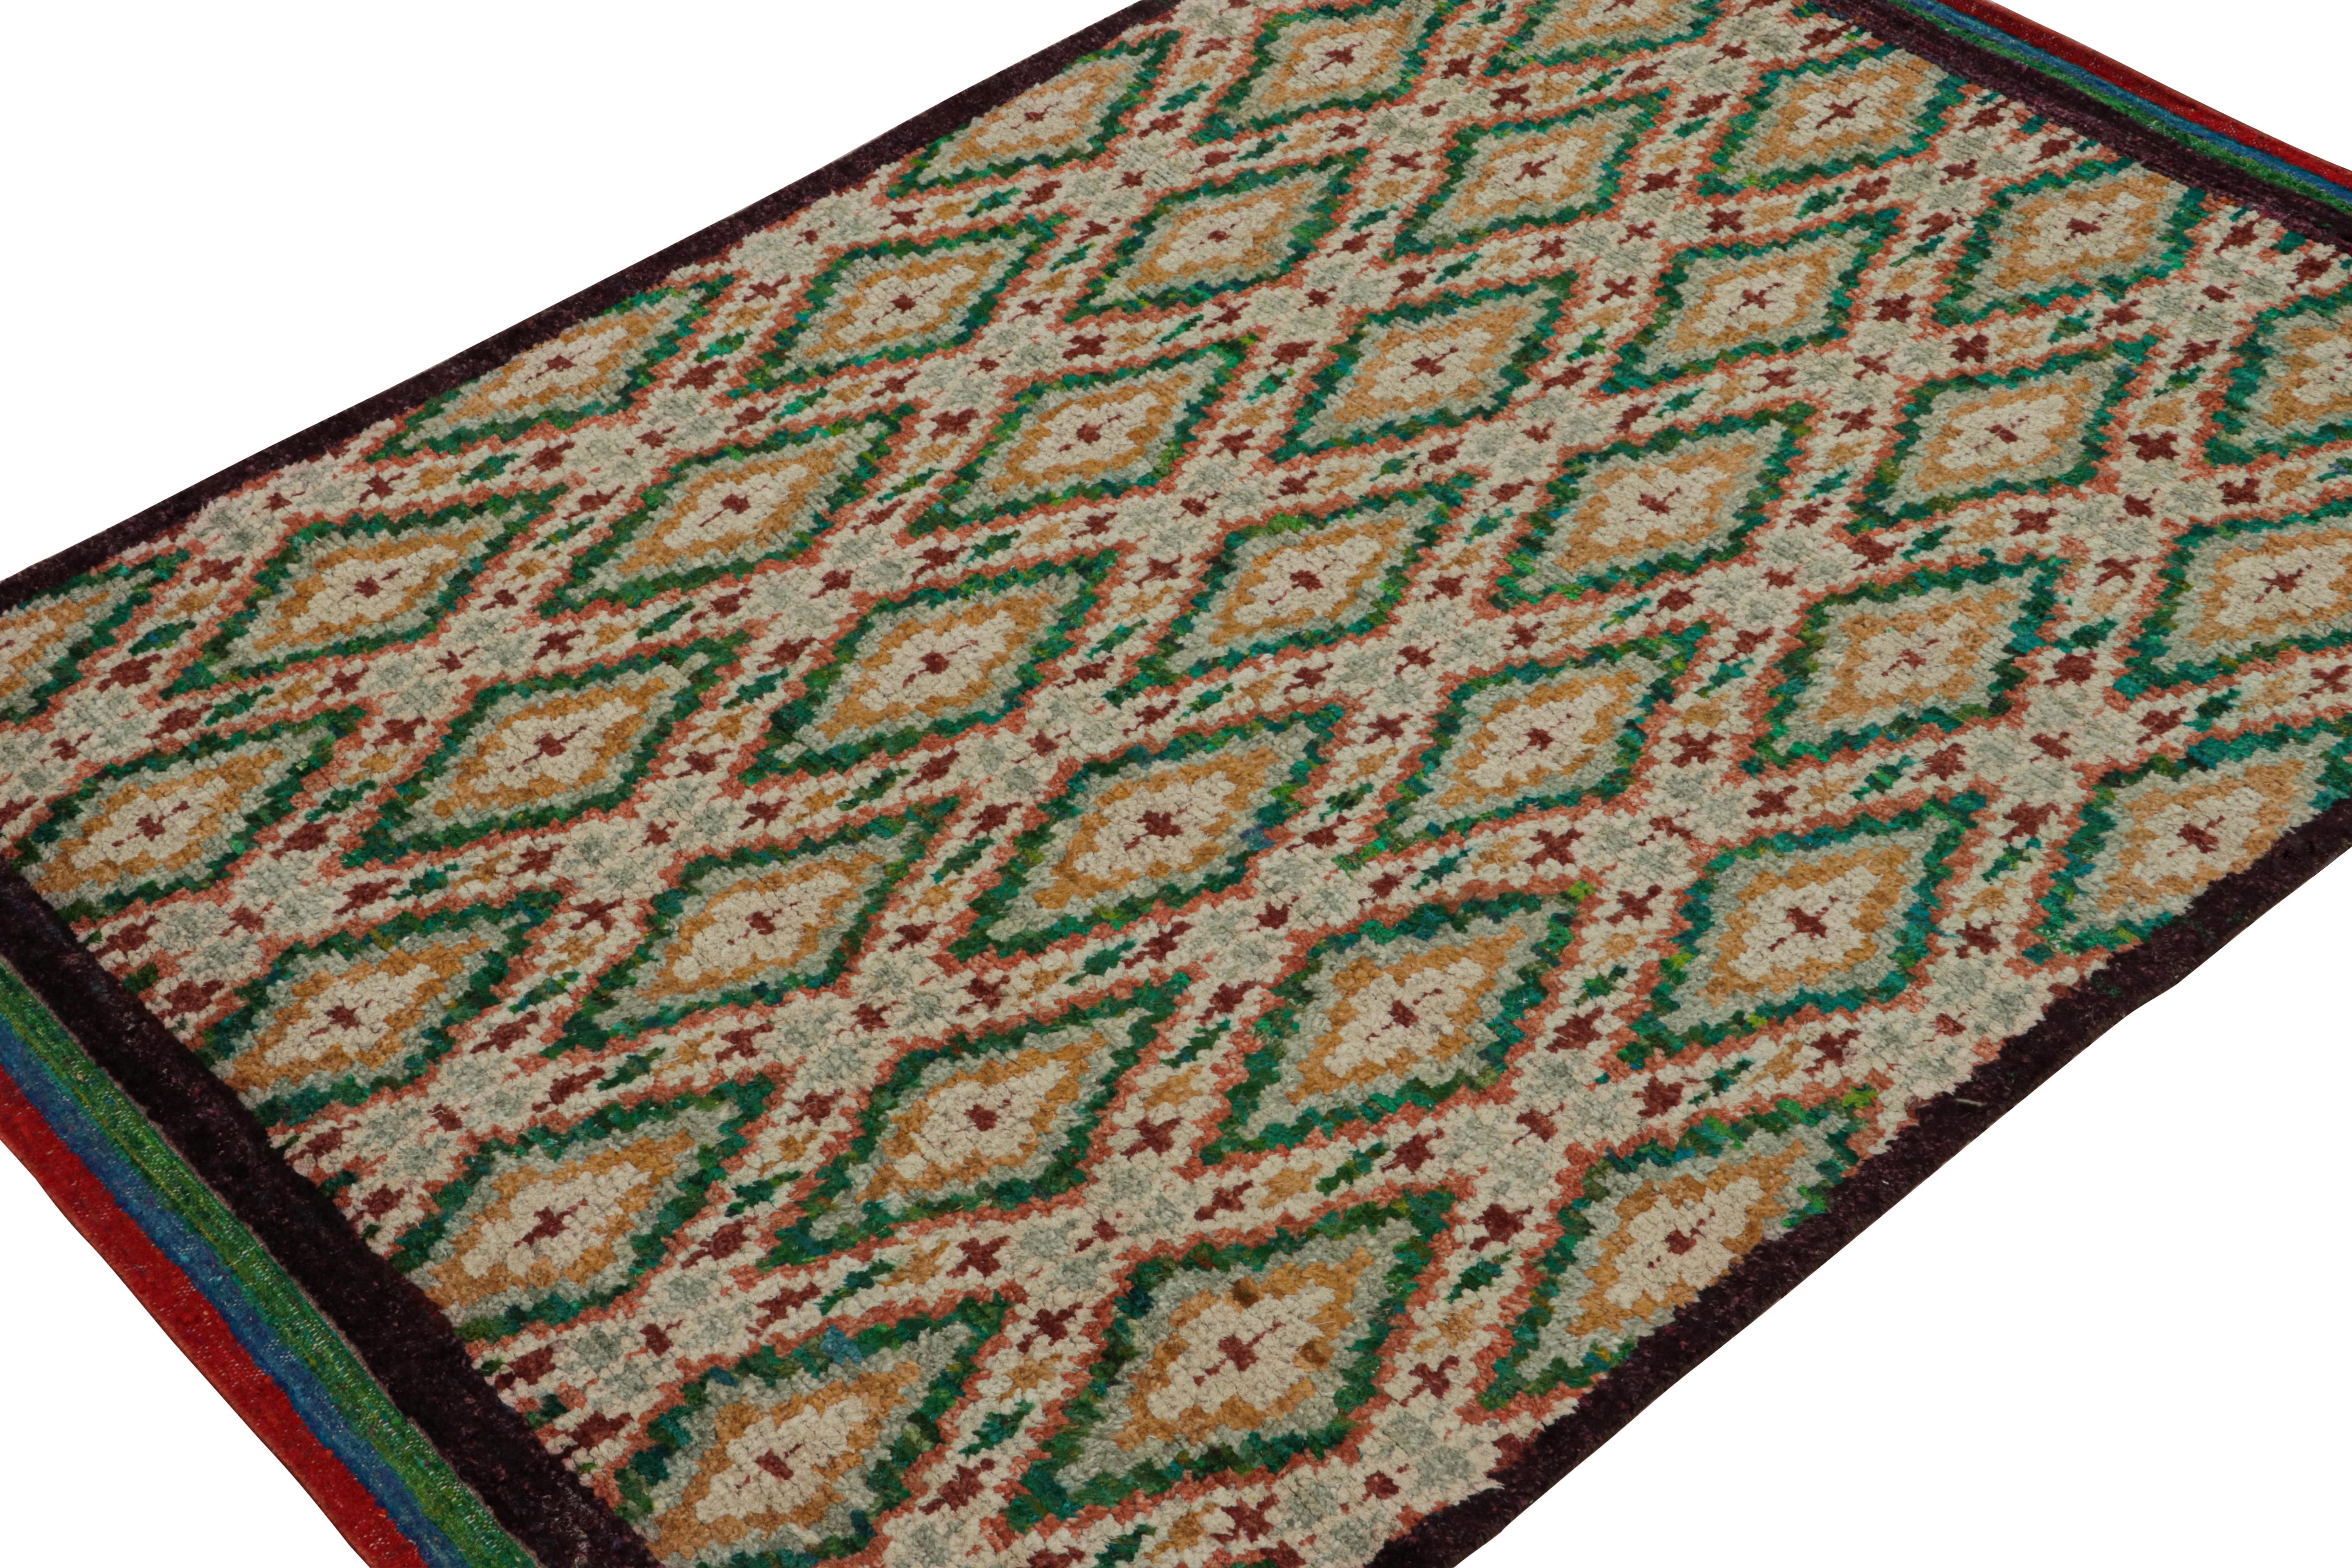 Noué à la main en laine, soie et coton, ce tapis 6x8 est un nouvel ajout à la Collectional de Rug & Kilim. 

Sur le Design/One

Ce tapis est de style primitiviste avec des motifs dans les tons de vert, d'or, de rouge et de noir. Les connaisseurs